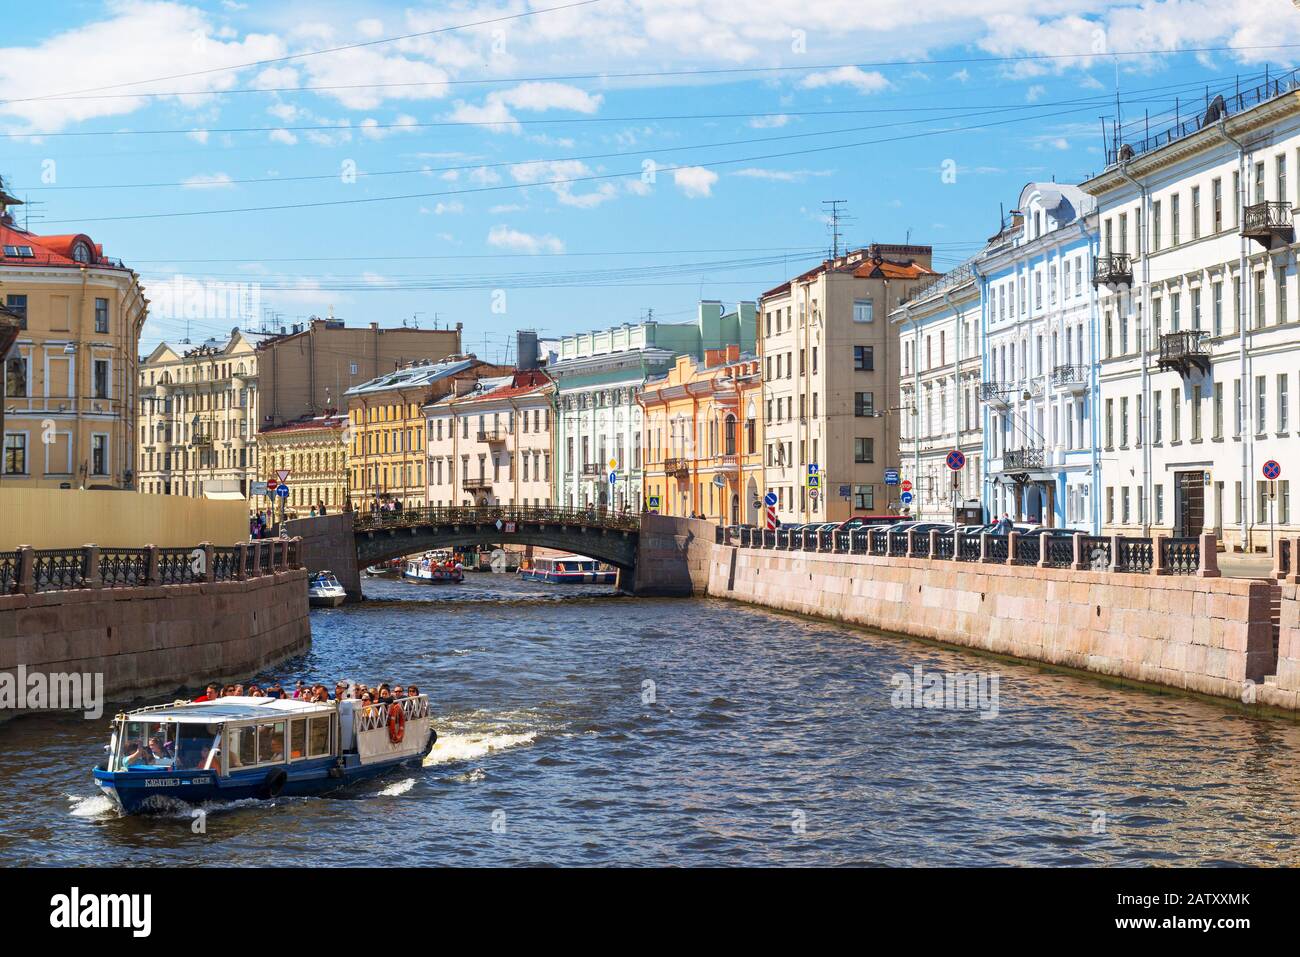 San Pietroburgo, Russia - Giugno 14, 2014: imbarcazioni turistiche galleggiante sul Fiume Moyka. San Pietroburgo è stata la capitale della Russia e attrae molti turisti. Foto Stock